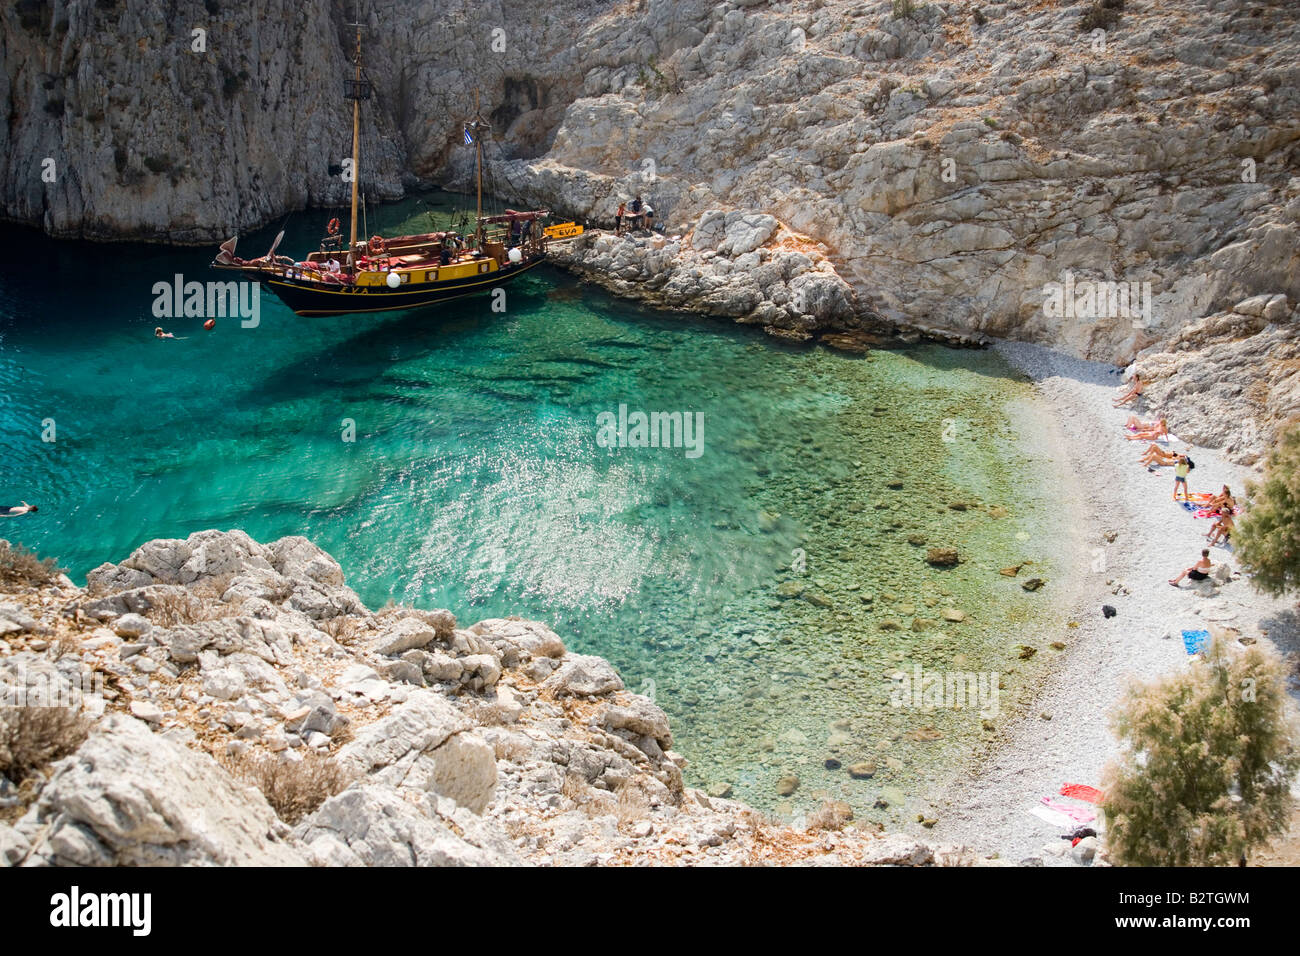 La natation de personnes dans une baie de Kalymnos à côté d'un bateau à voile, Grèce Banque D'Images